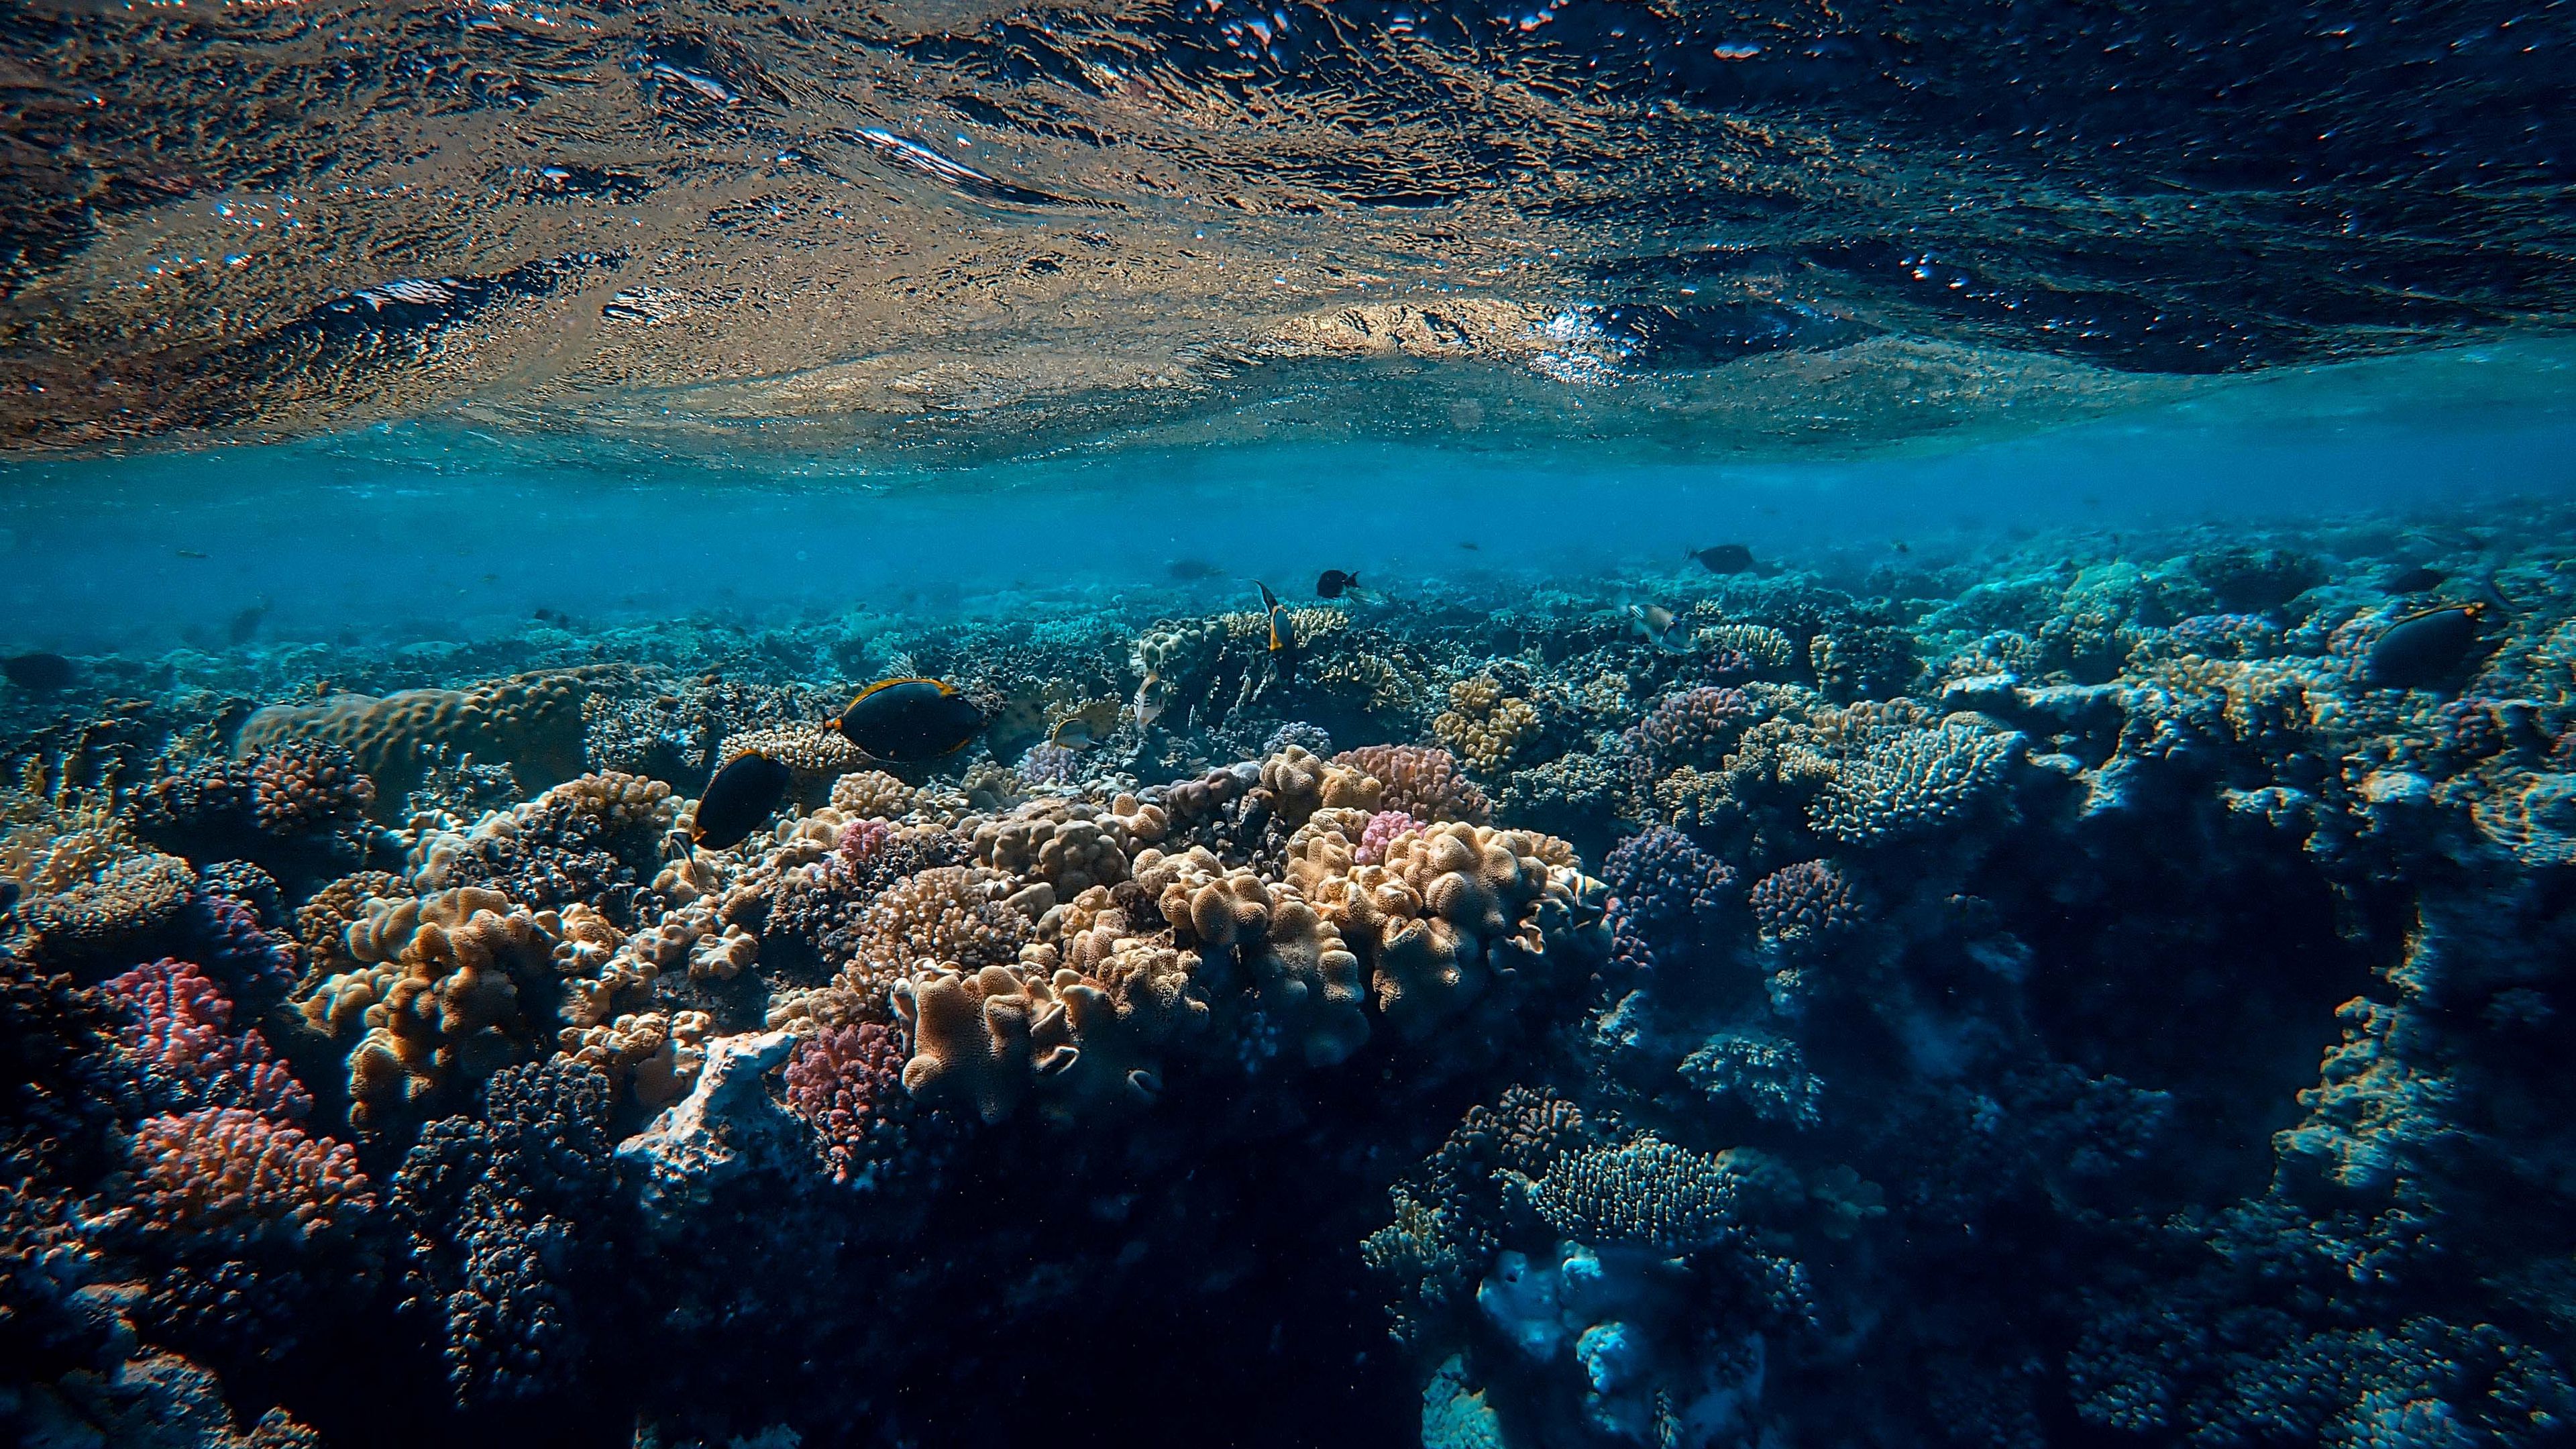 Khám phá thế giới dưới đáy đại dương với hình nền 3840x2160 sống động và hoành tráng. Tận hưởng không gian tuyệt đẹp của đại dương, với hàng trăm loài cá và san hô đầy màu sắc. Hãy khám phá và thức tỉnh trí tò mò trong bạn với hình nền này.